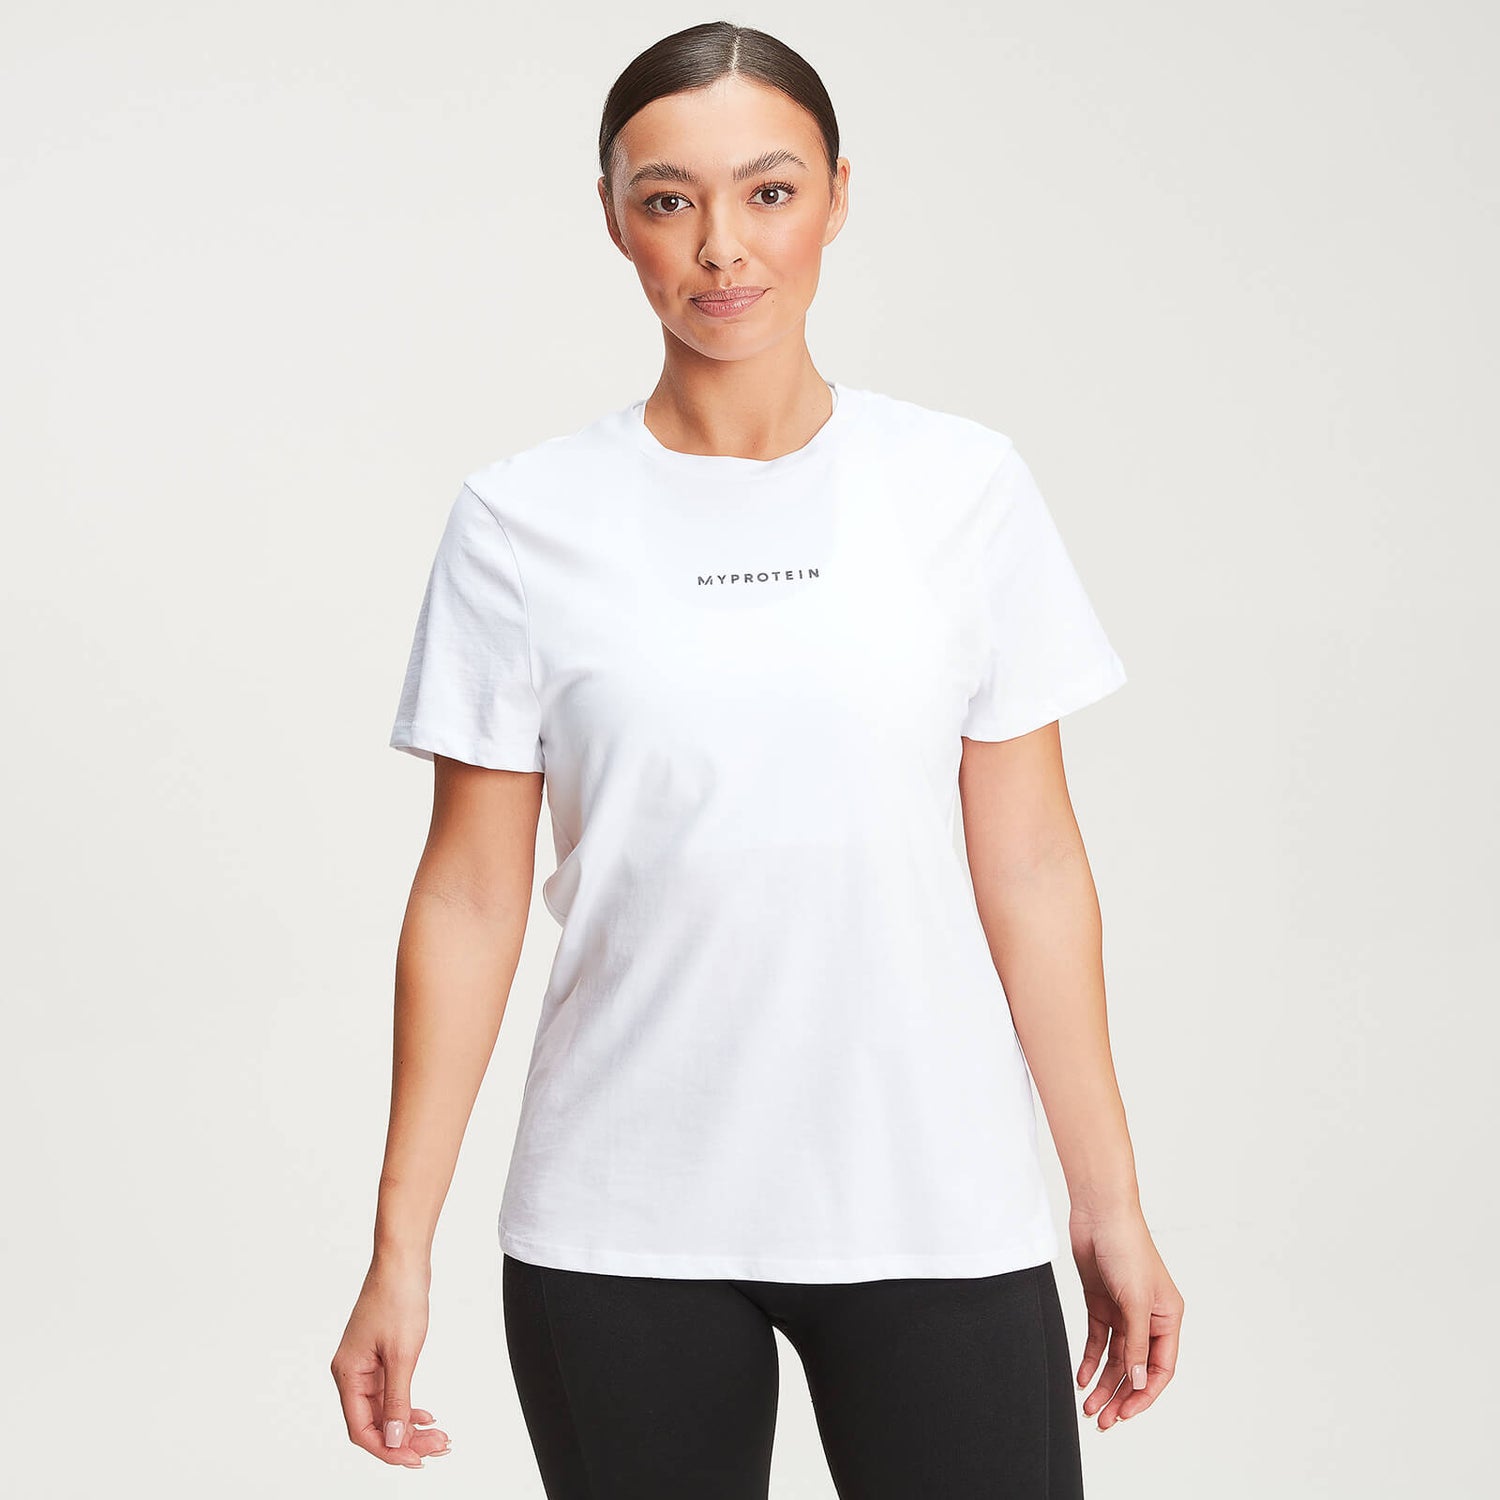 Camiseta New Originals Contemporánea de Mujer - Blanco